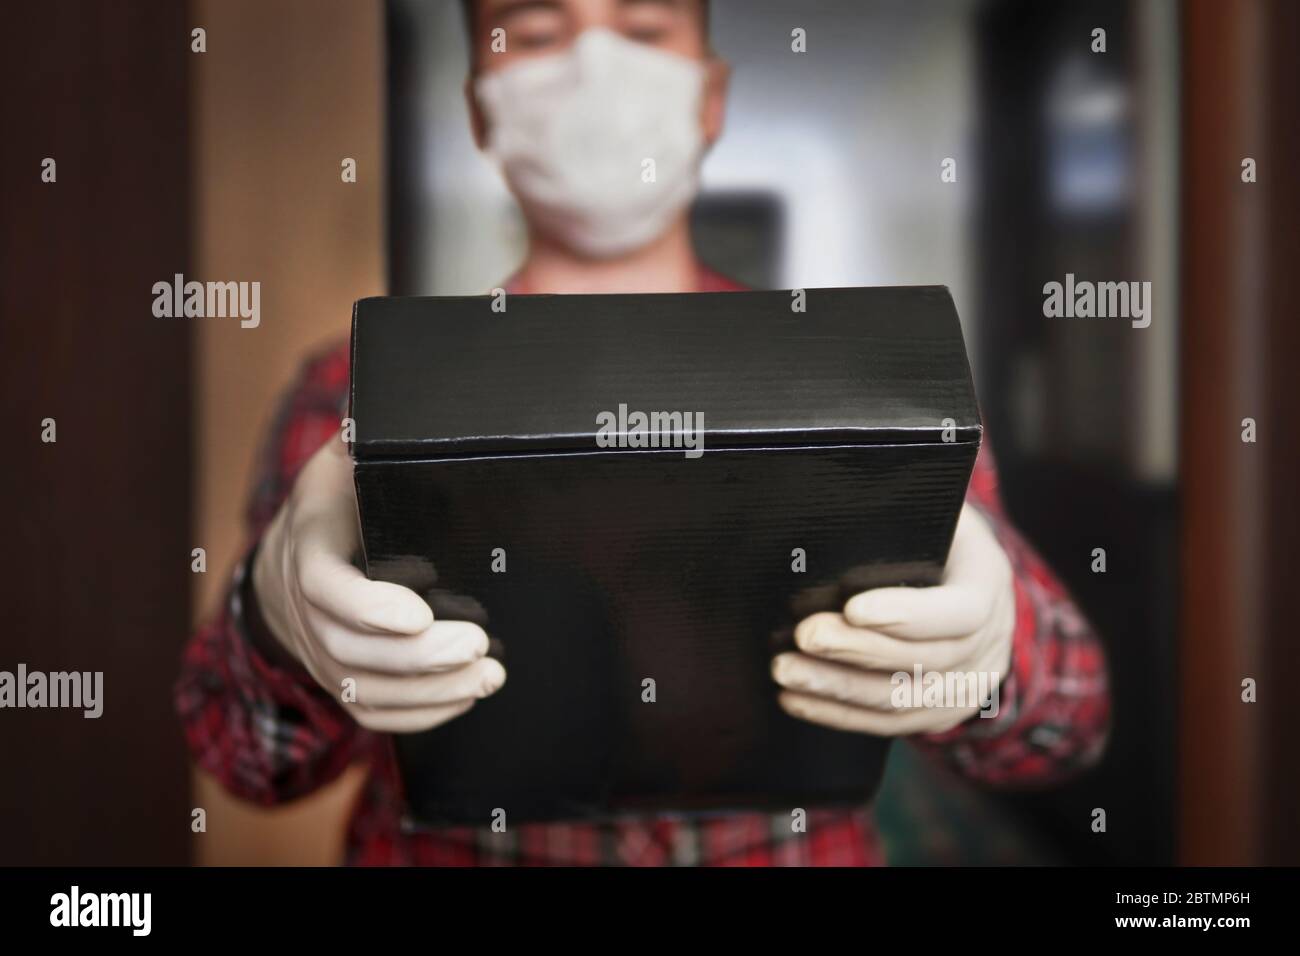 Nach Hause liefern, Online-Bestellung. Mann in einer medizinischen Maske und Gummihandschuhe mit schwarzer Box, ein Paket in den Händen. Lieferung während der Quarantäne der Stockfoto